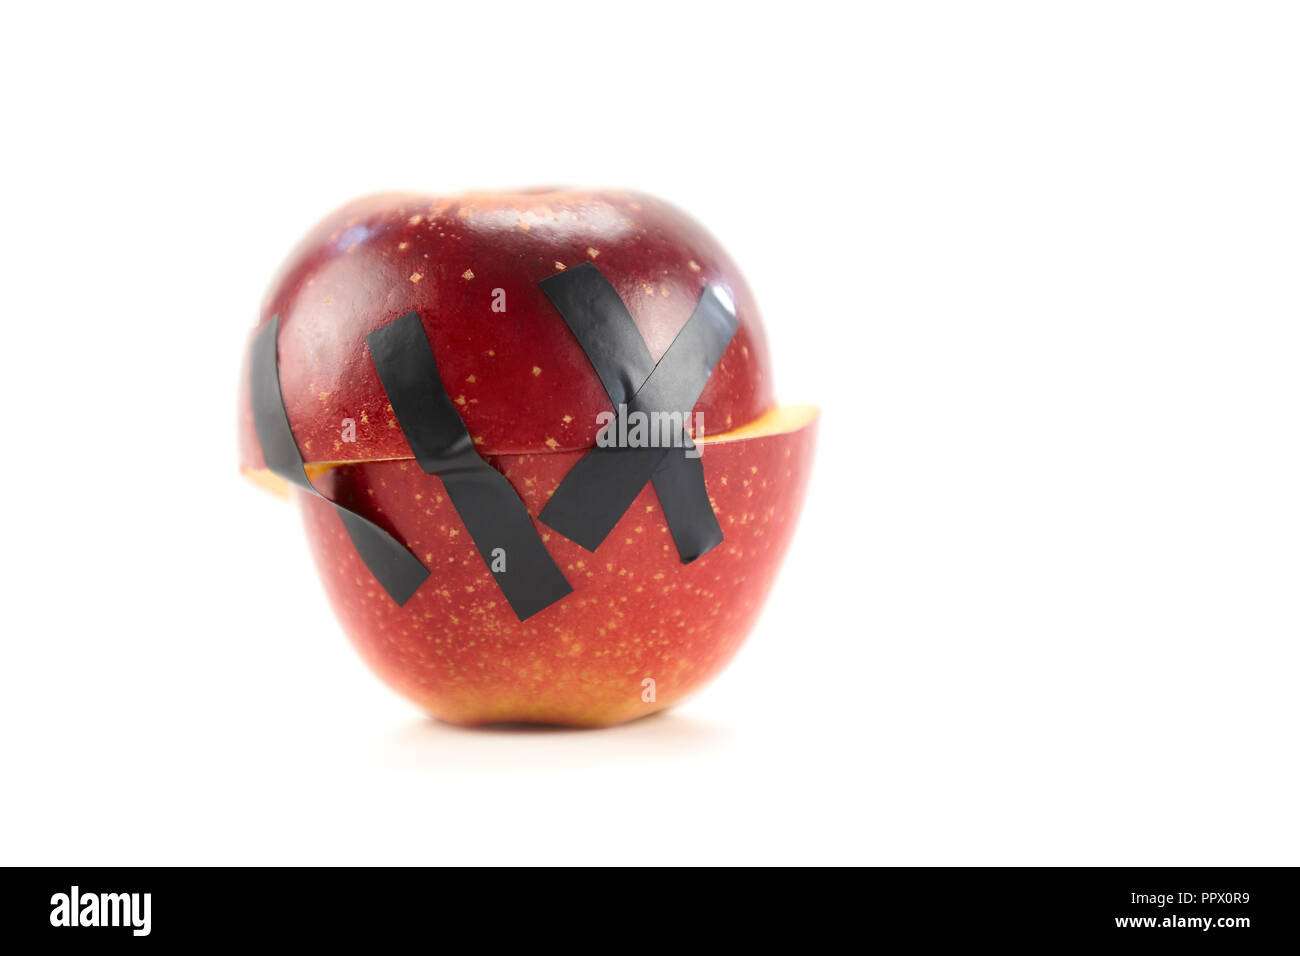 Zwei Hälften eines roten Apfel zusammen mit schwarzem Klebeband isoliert auf weißem Hintergrund statt. Stockfoto